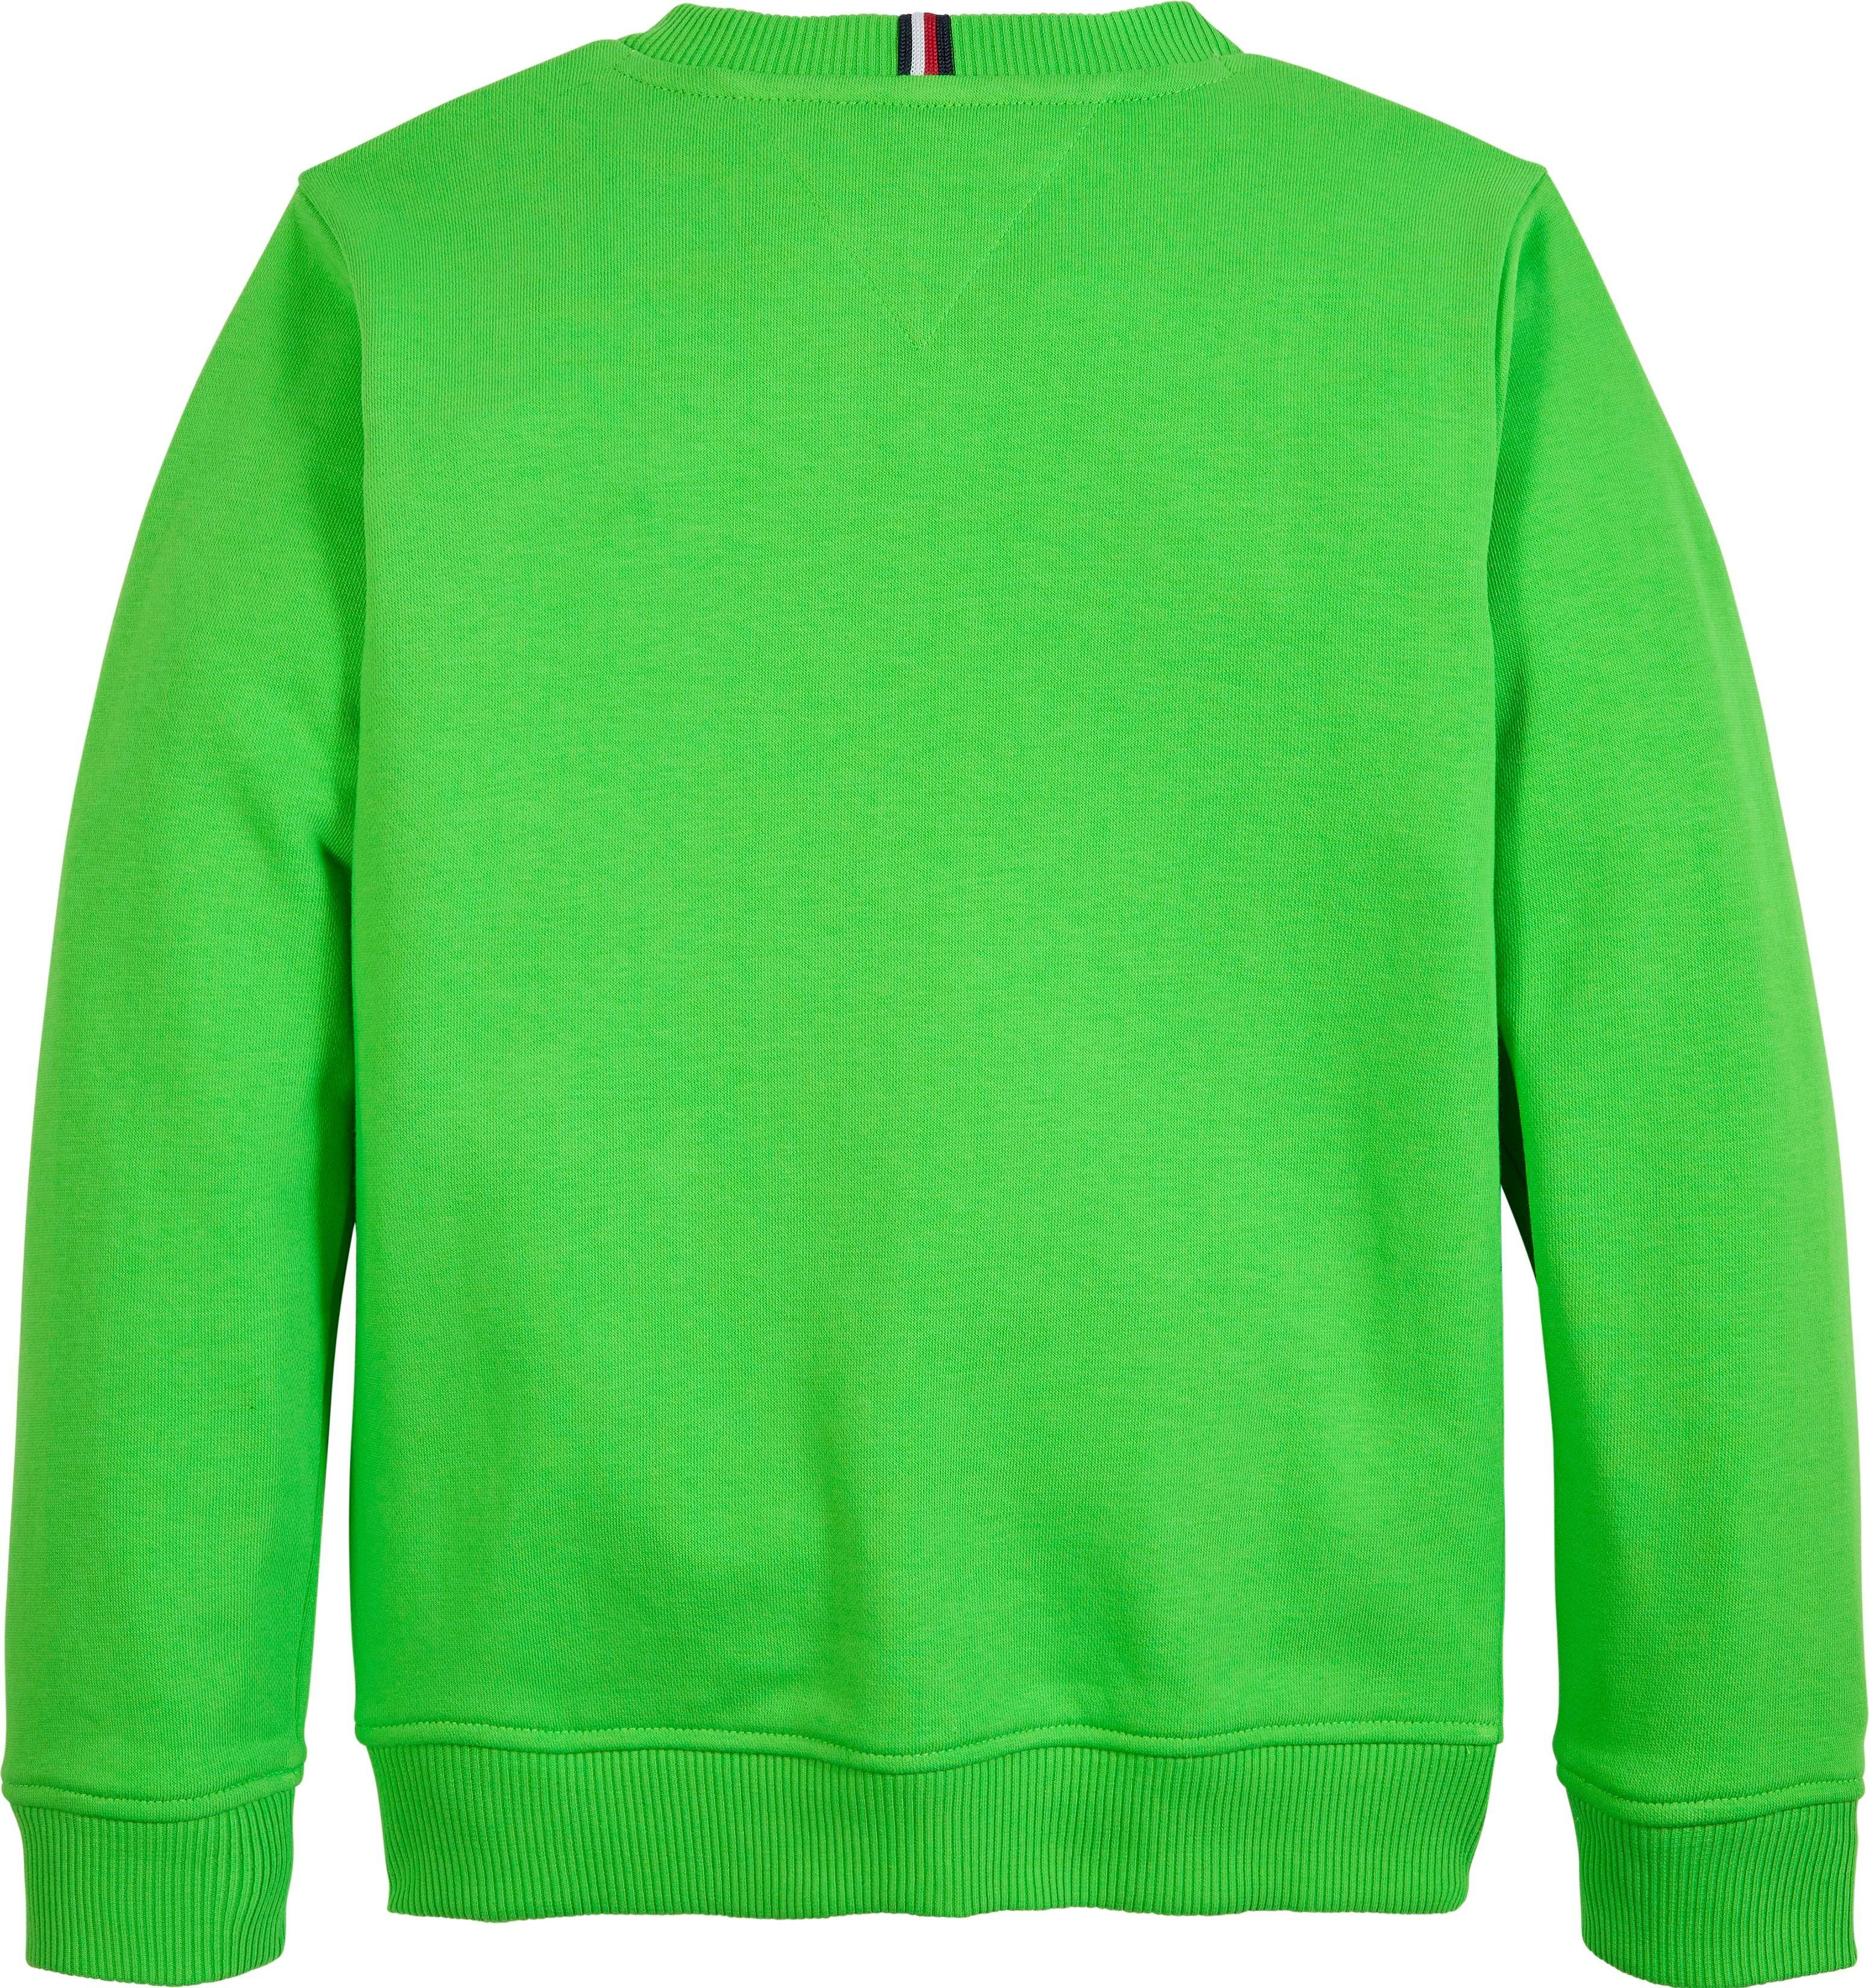 Logoschriftzug LOGO Sweatshirt Spring-Lime Tommy Hilfiger SWEATSHIRT mit TH